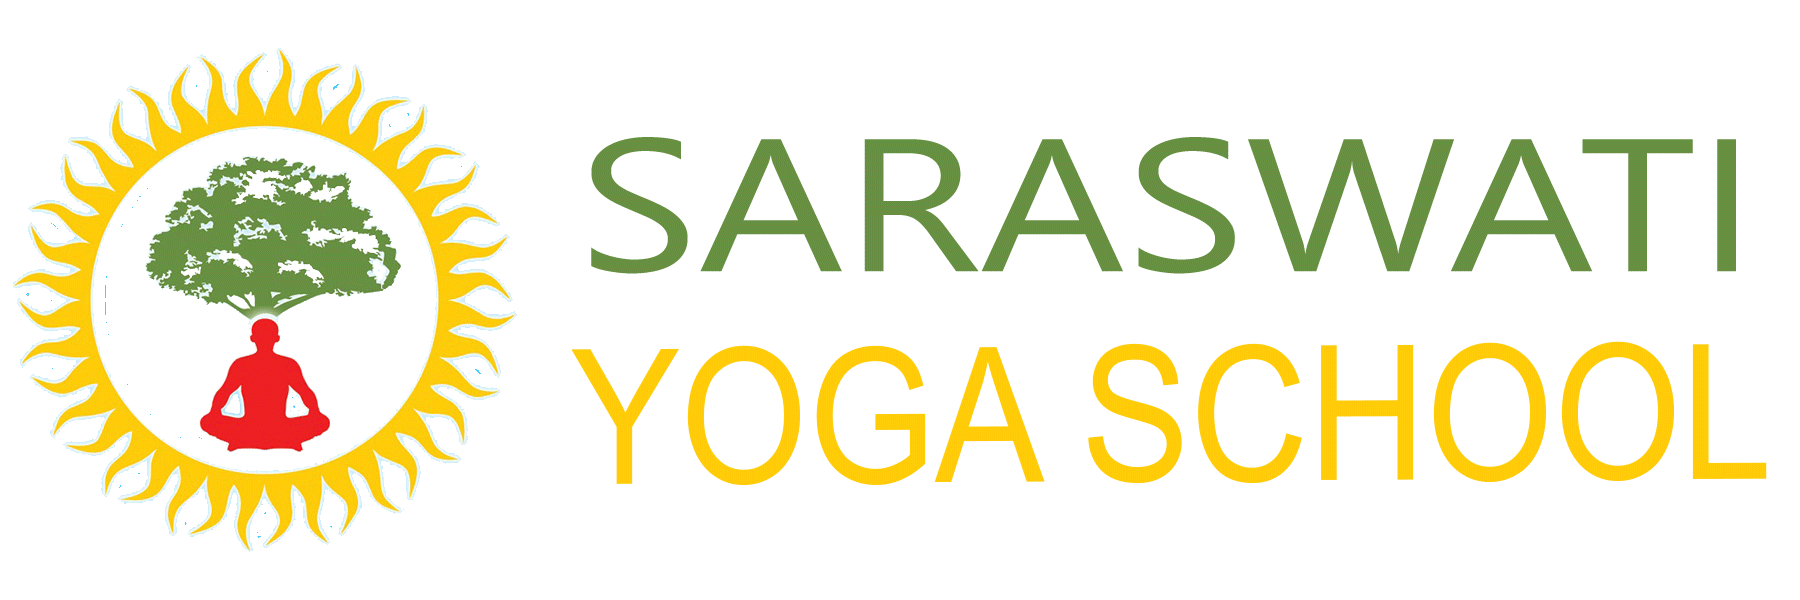 Sarawasti Yoga School Logo